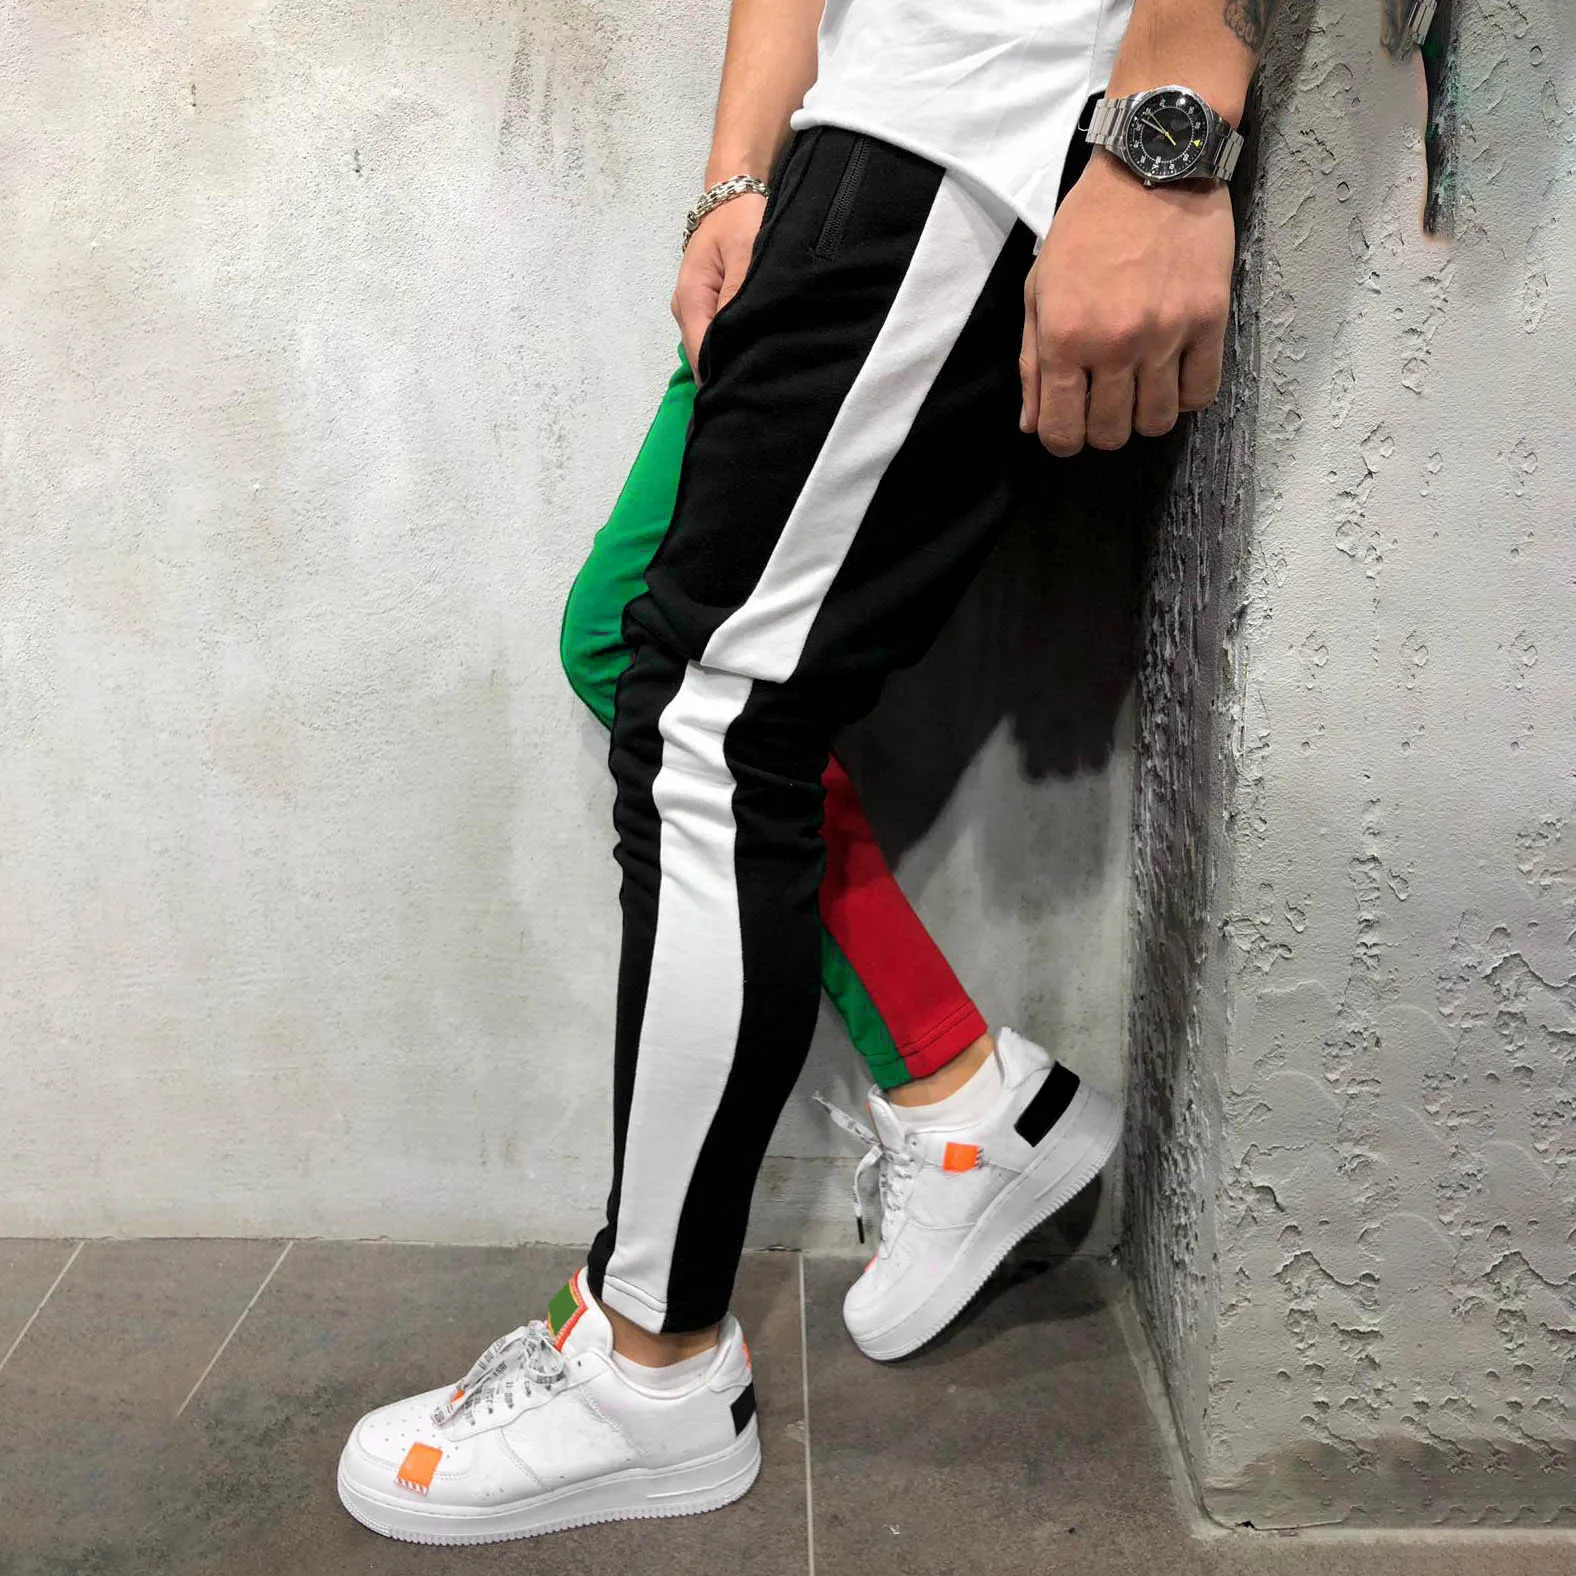 CYSINCOS мужские спортивные брюки прилегающего кроя на шнурке полосатые спортивные штаны Цветные Лоскутные бриджи для бега хип-хоп брюки